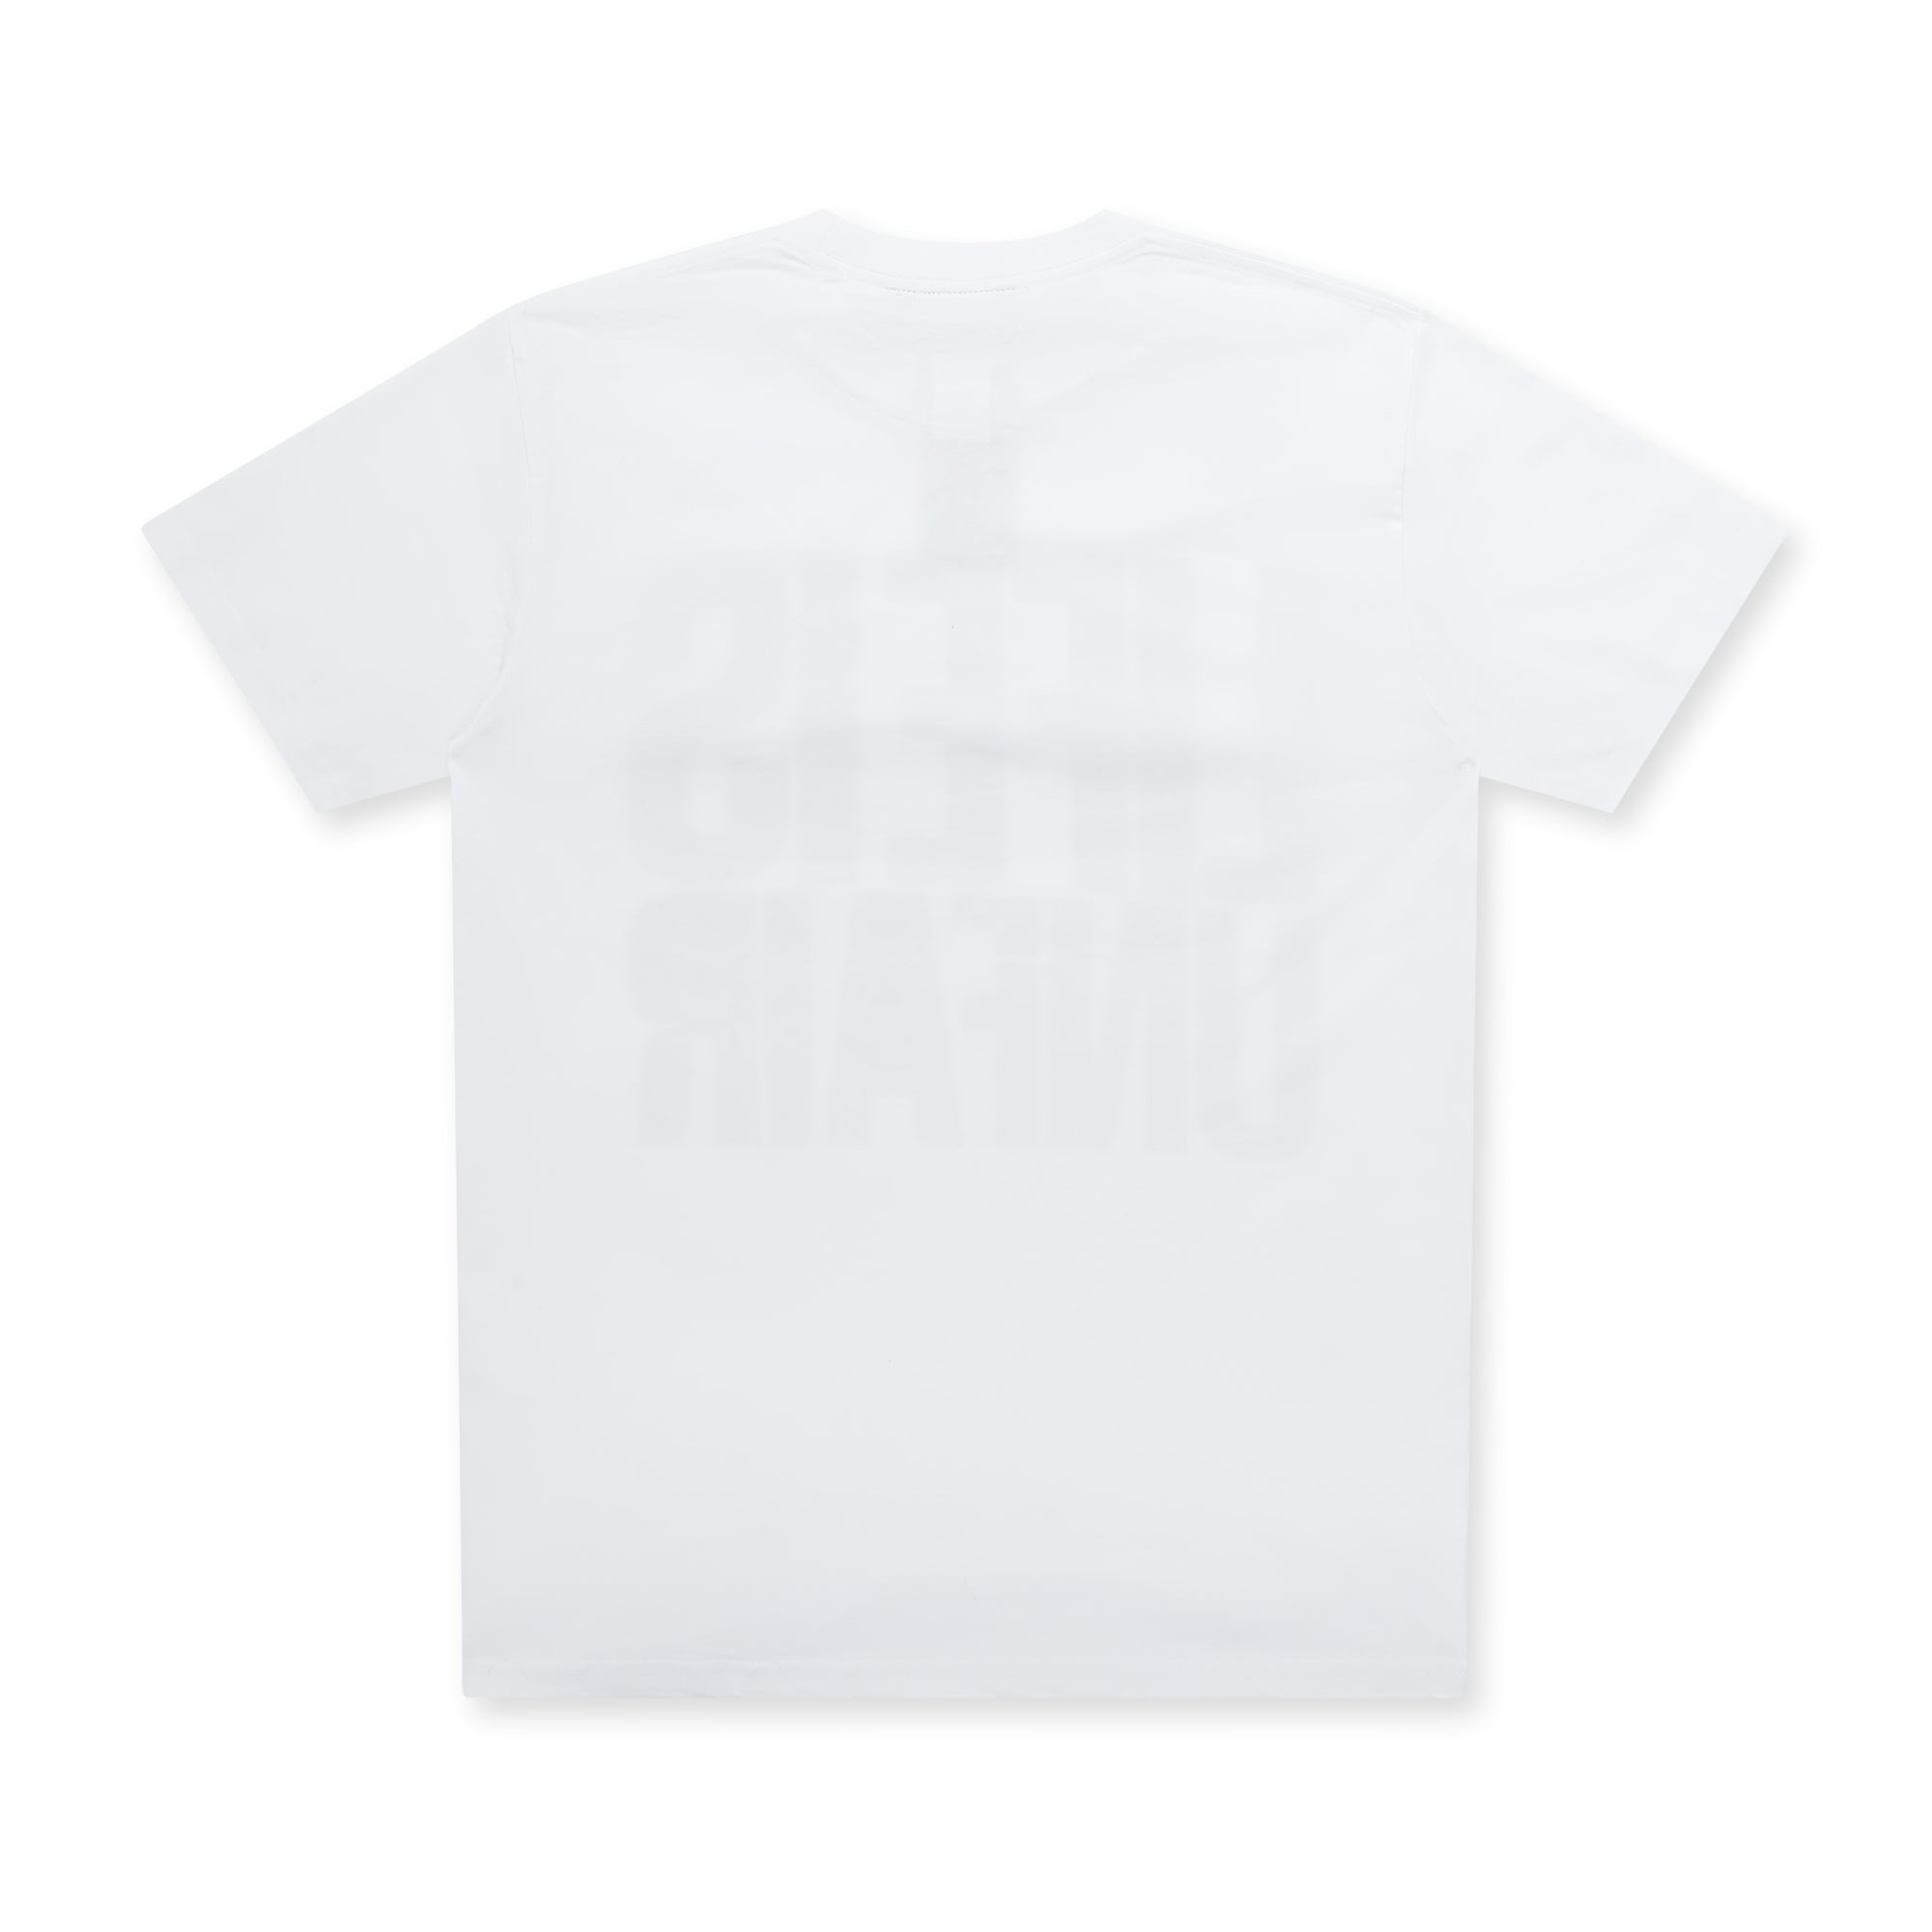 Lifeisunfair - London T-Shirt - (White) view 2